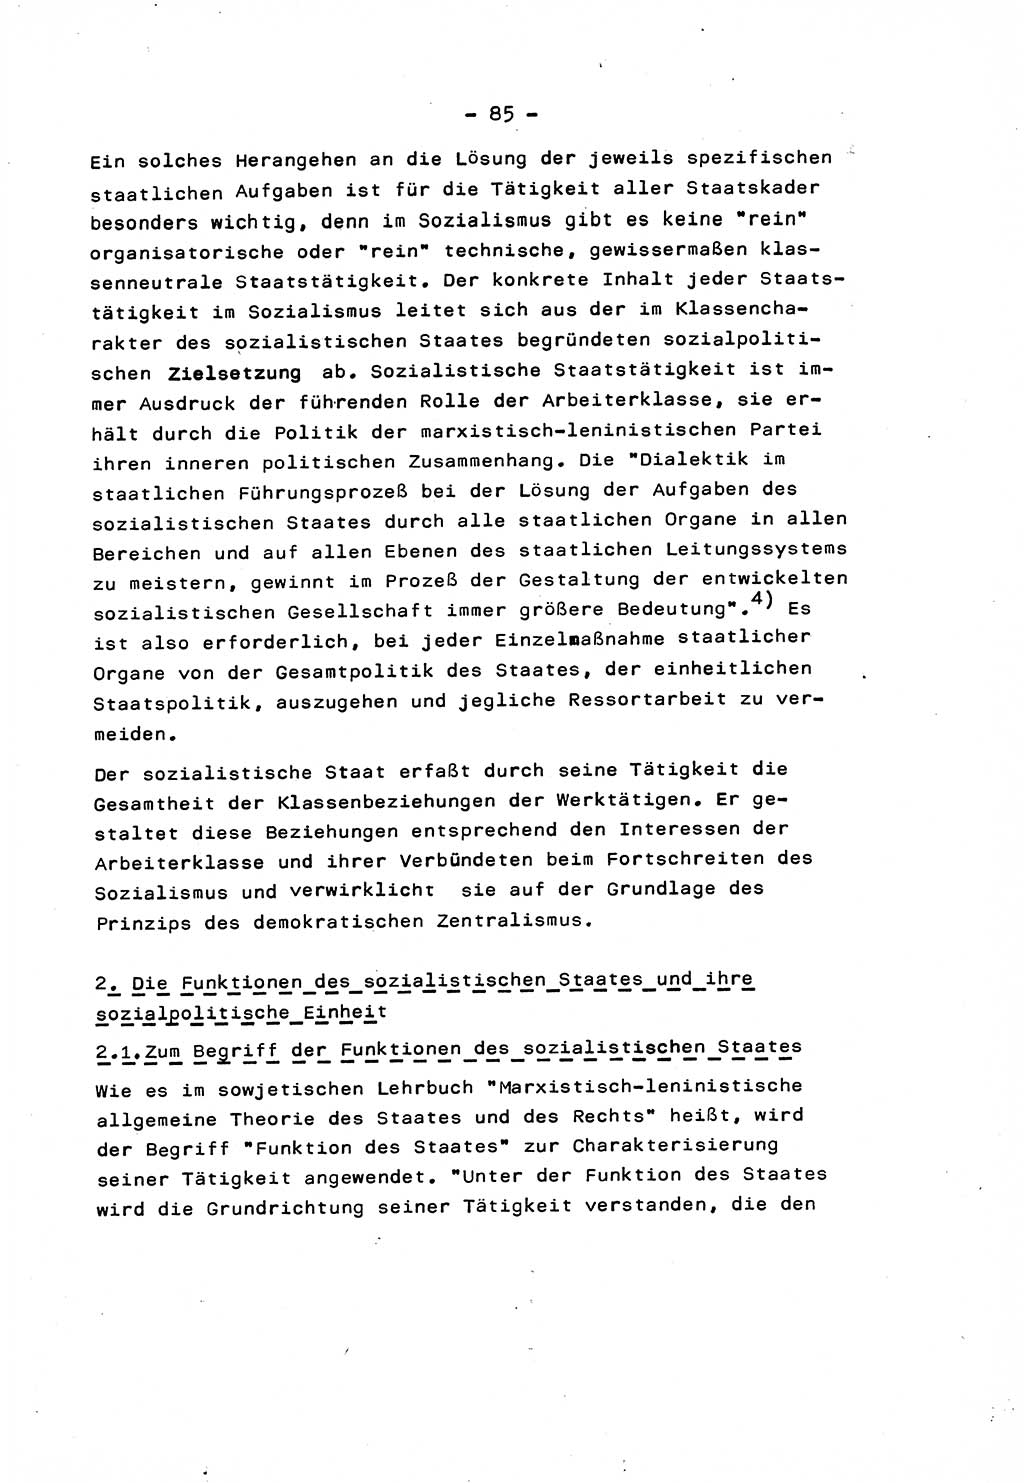 Marxistisch-leninistische Staats- und Rechtstheorie [Deutsche Demokratische Republik (DDR)] 1975, Seite 85 (ML St.-R.-Th. DDR 1975, S. 85)